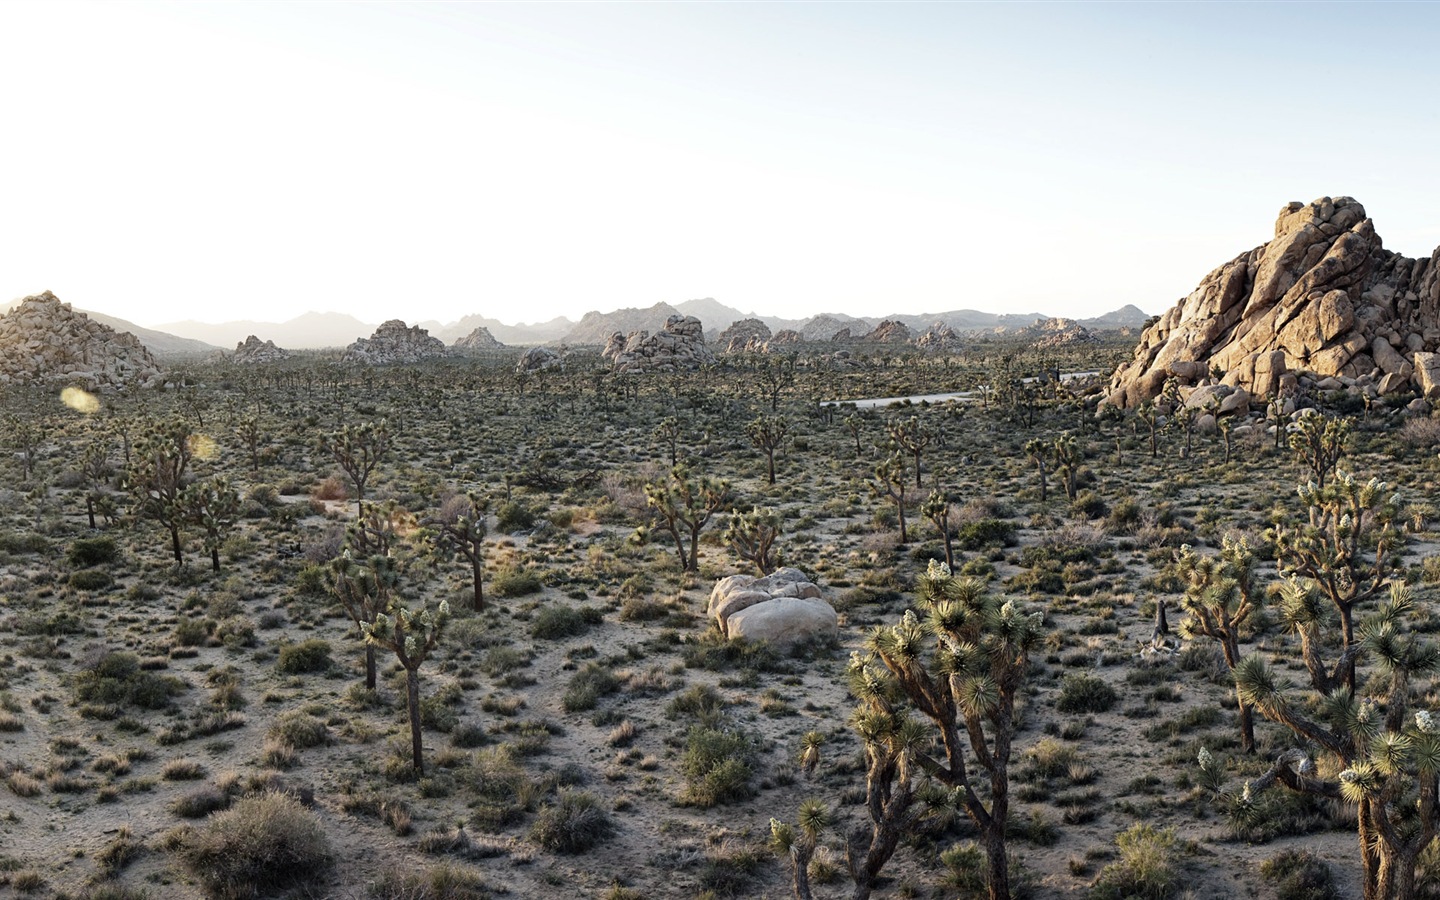 Les déserts chauds et arides, de Windows 8 fonds d'écran widescreen panoramique #9 - 1440x900